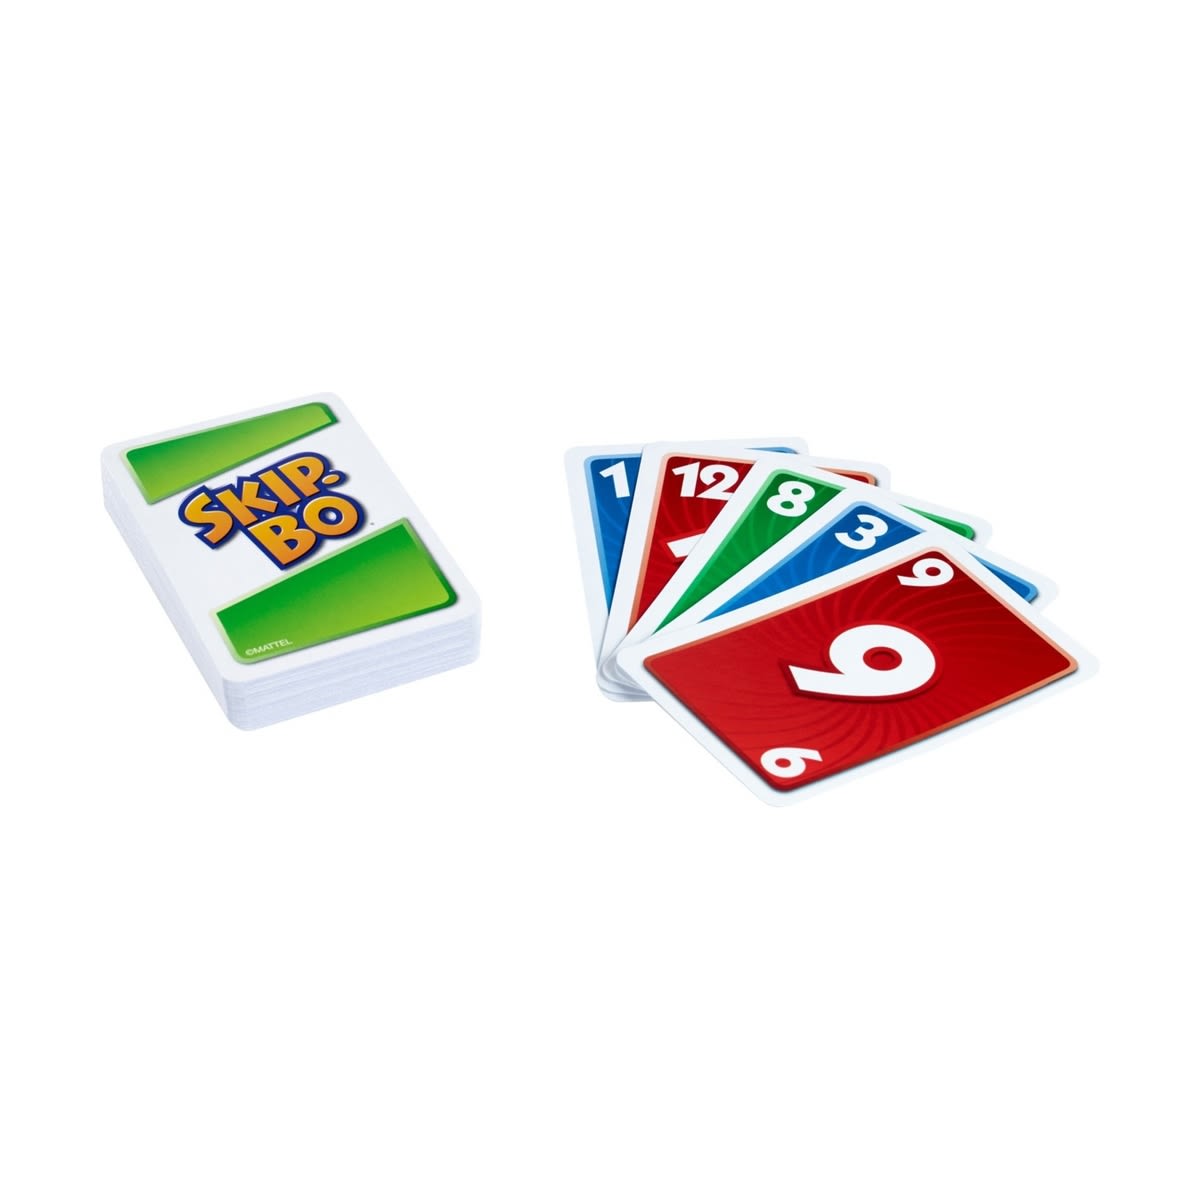 Skip-Bo Card Game - Toybox Tales